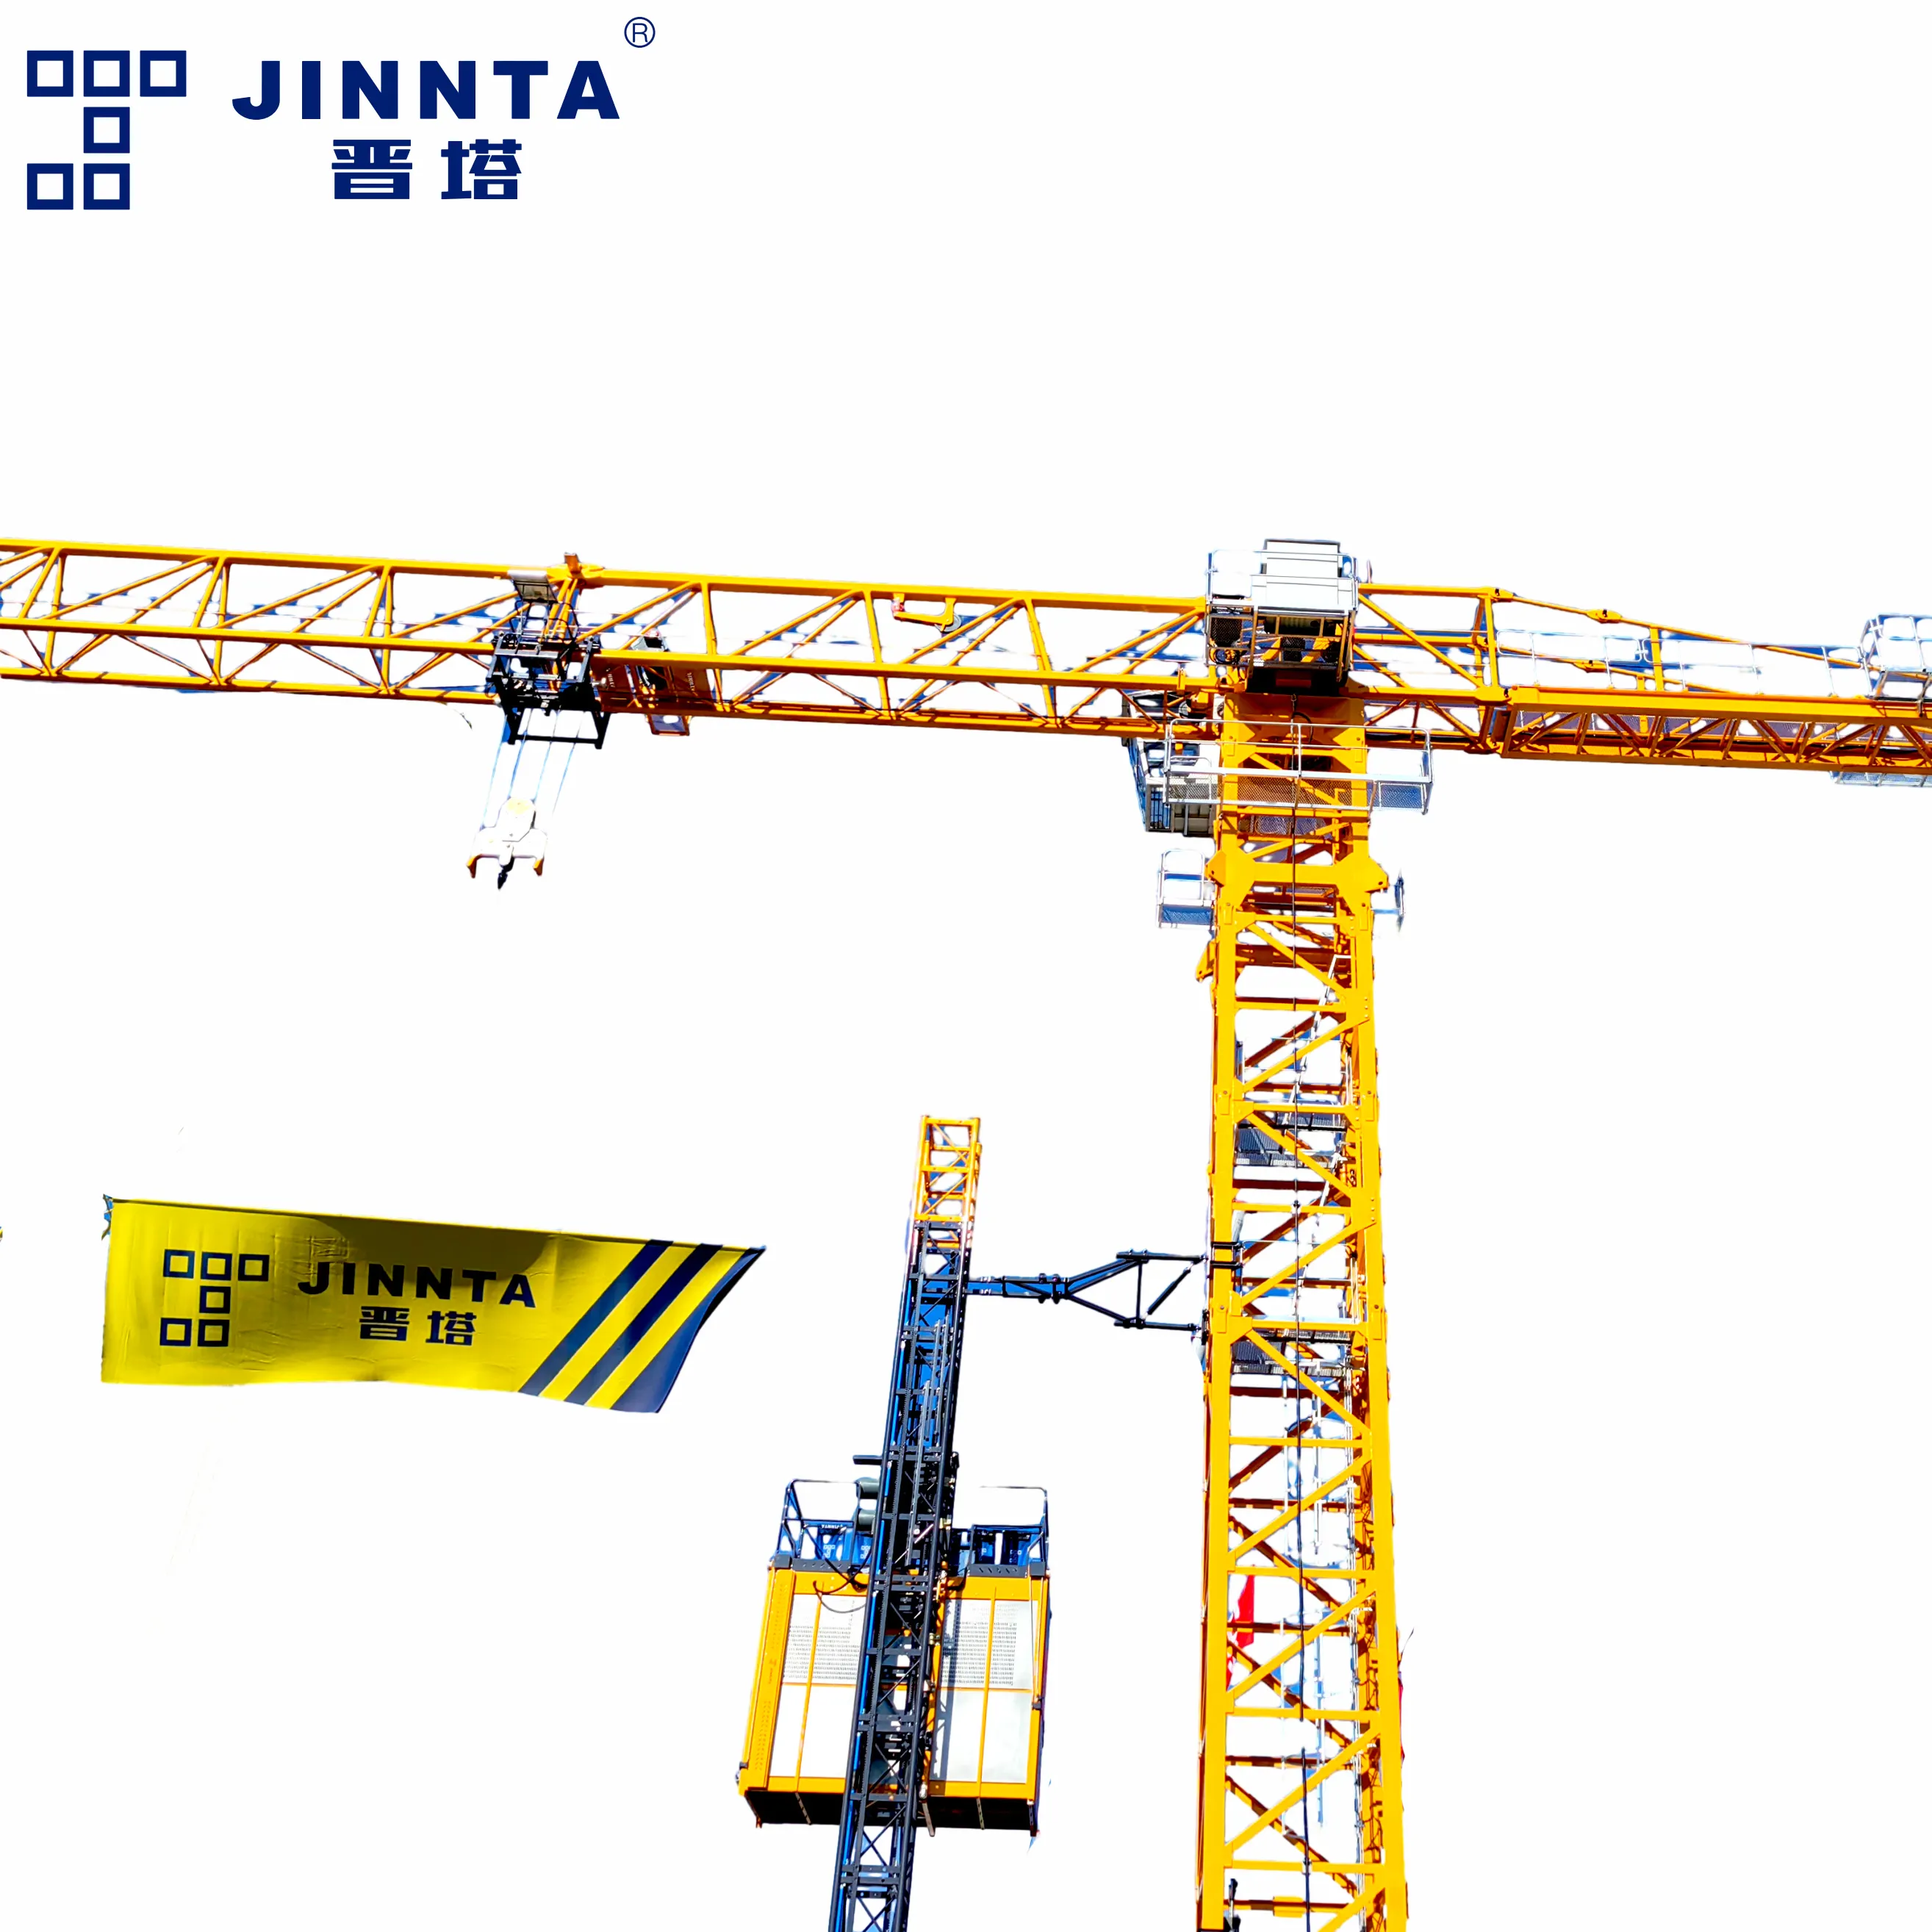 رافعة برجية من JINNTA CE بشهادة 315KNM بتصميم جديد رافعة بناء لاختبار مقاومة الشيخوخة